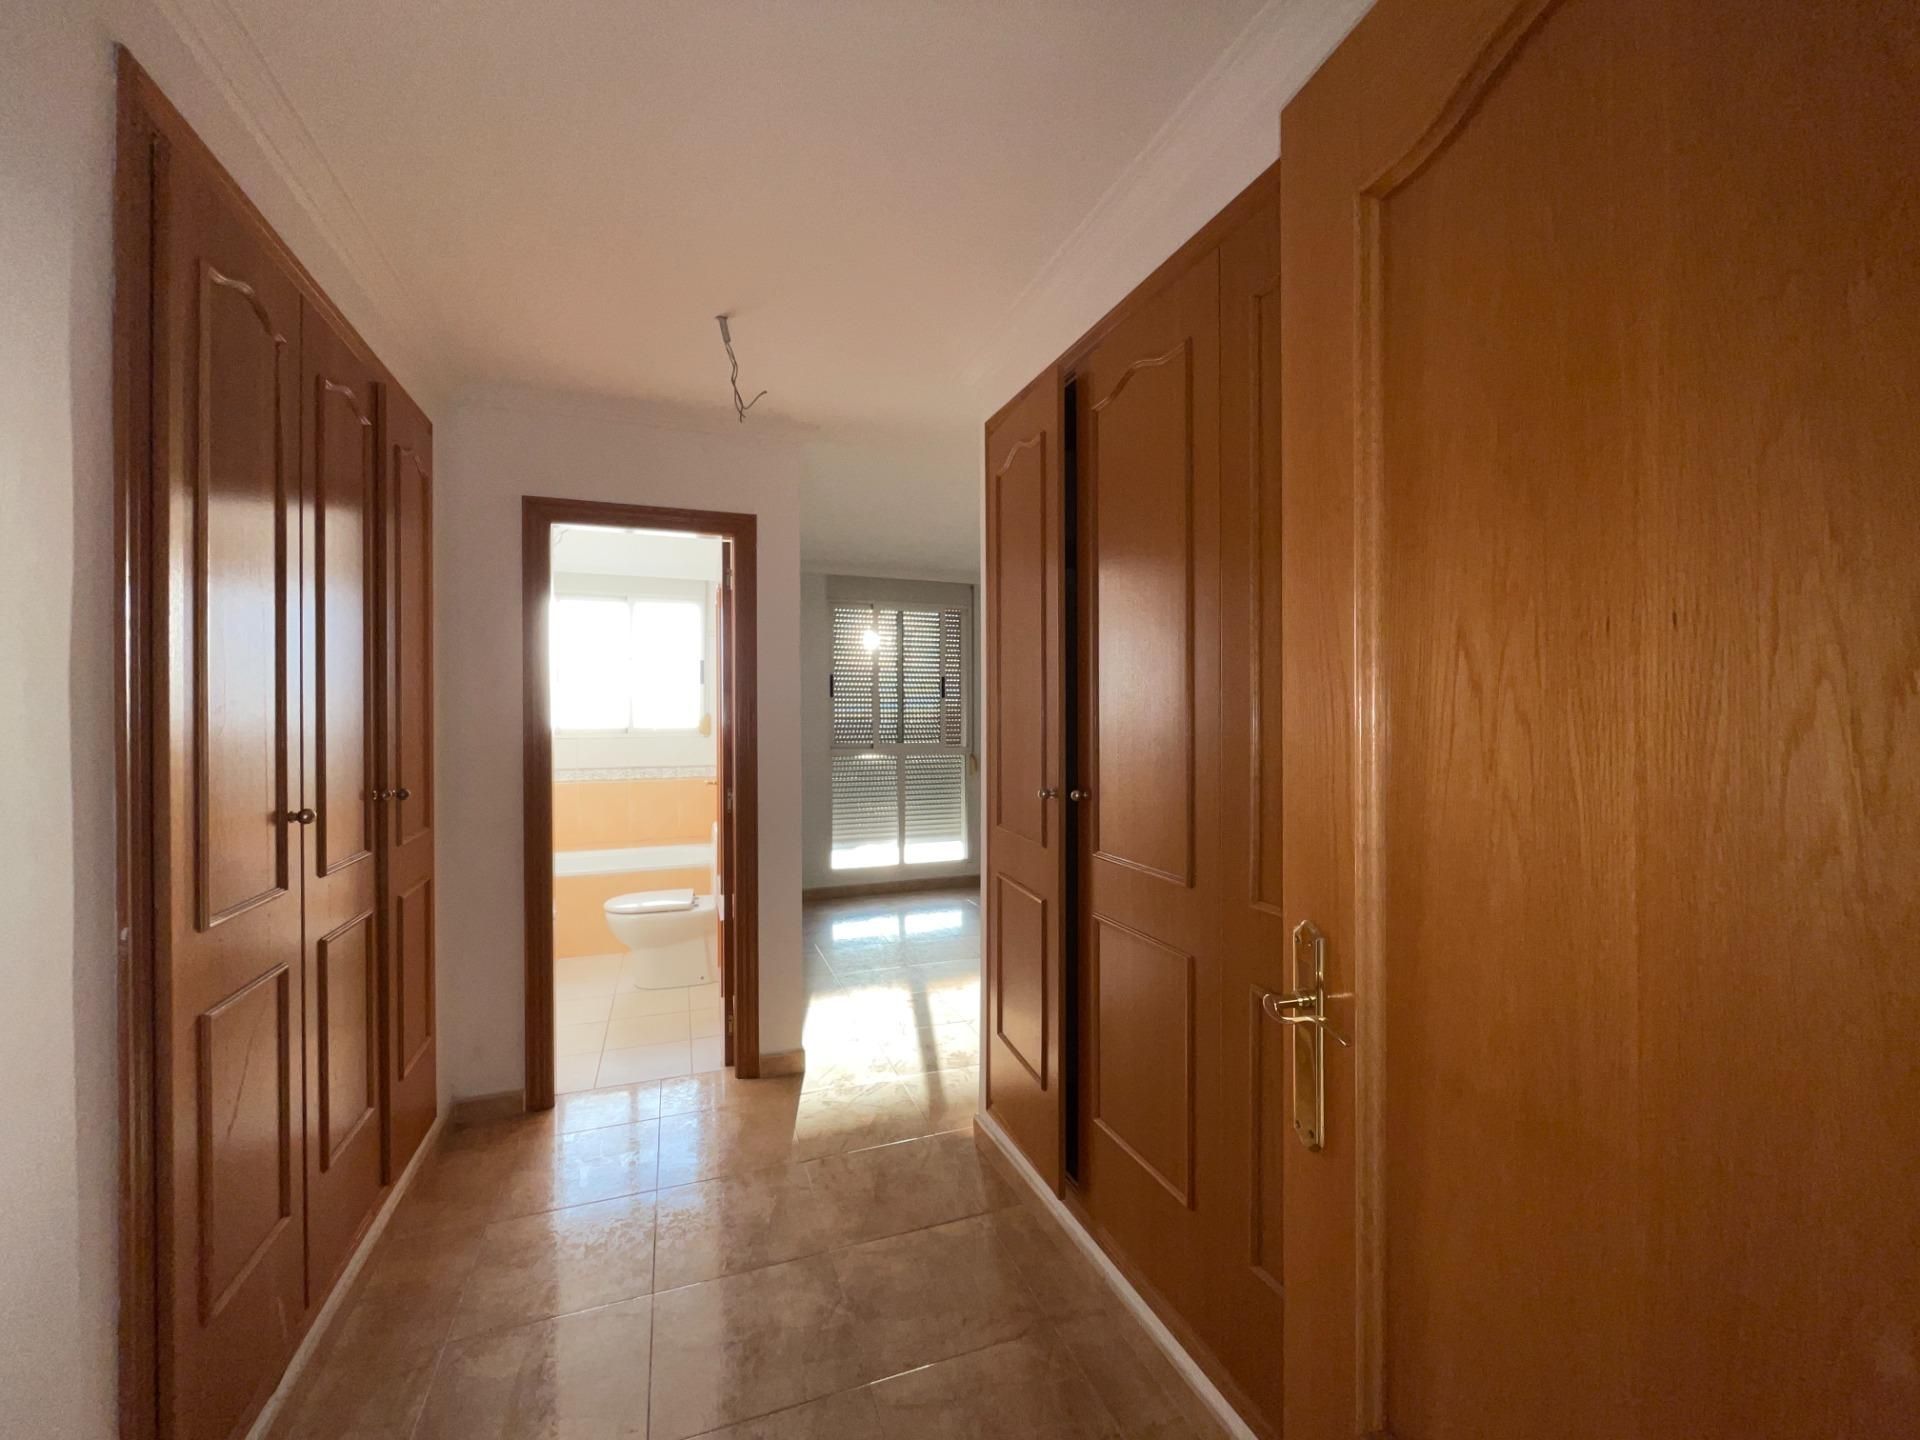 Oportunidad en Castellón: Venden una casa de siete dormitorios con una rebaja de casi 20.000 euros